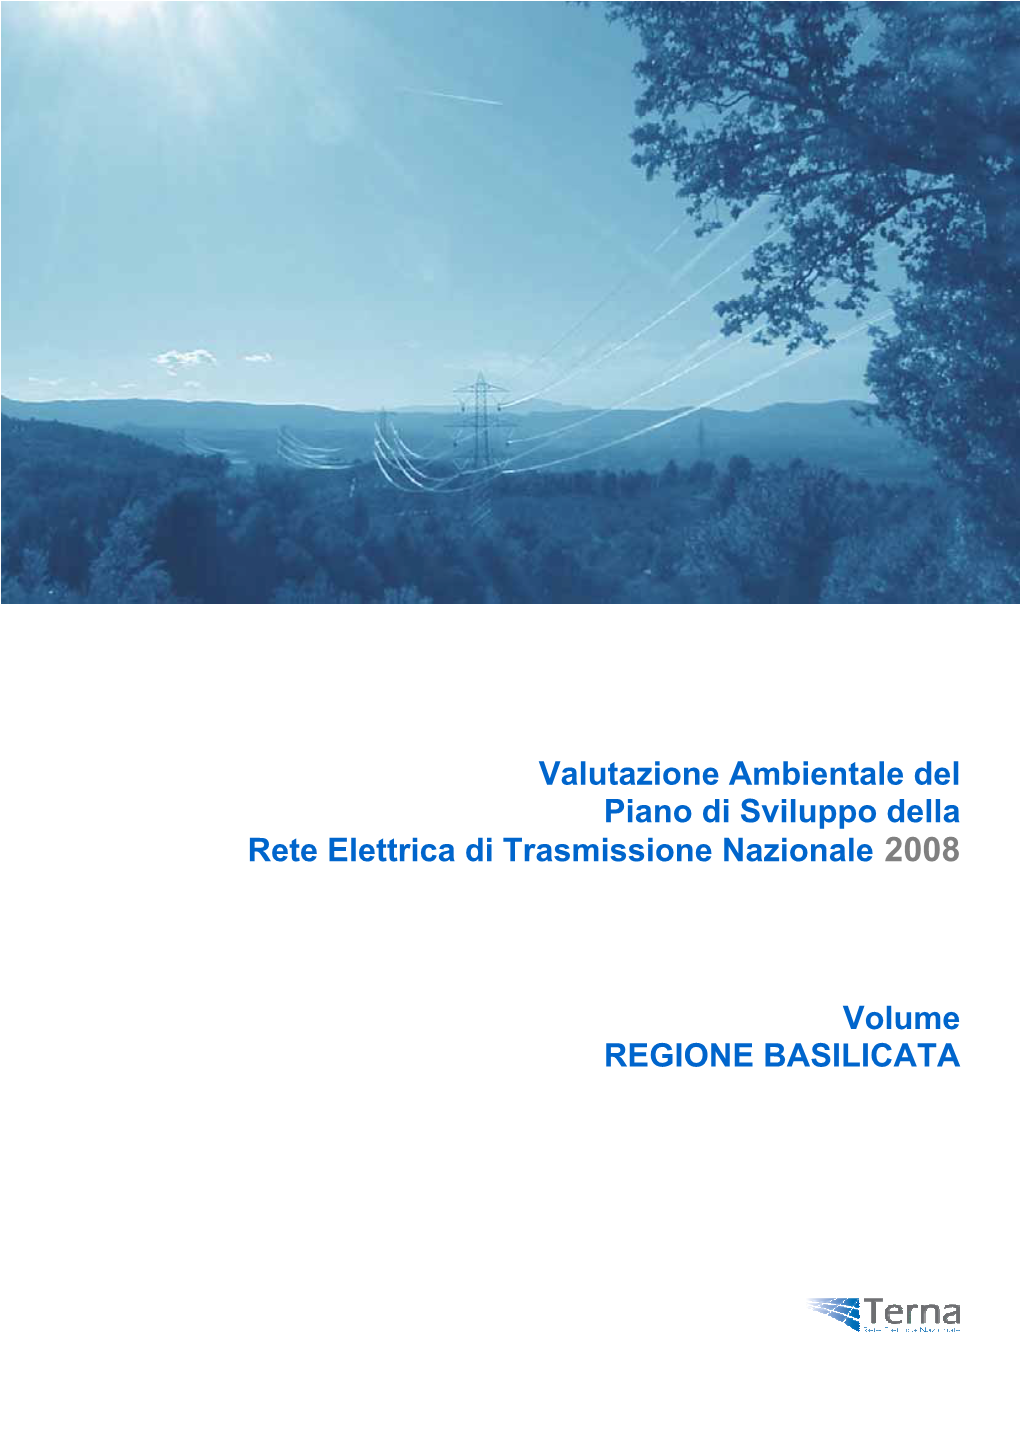 Valutazione Ambientale Del Piano Di Sviluppo Della Rete Elettrica Di Trasmissione Nazionale 2008